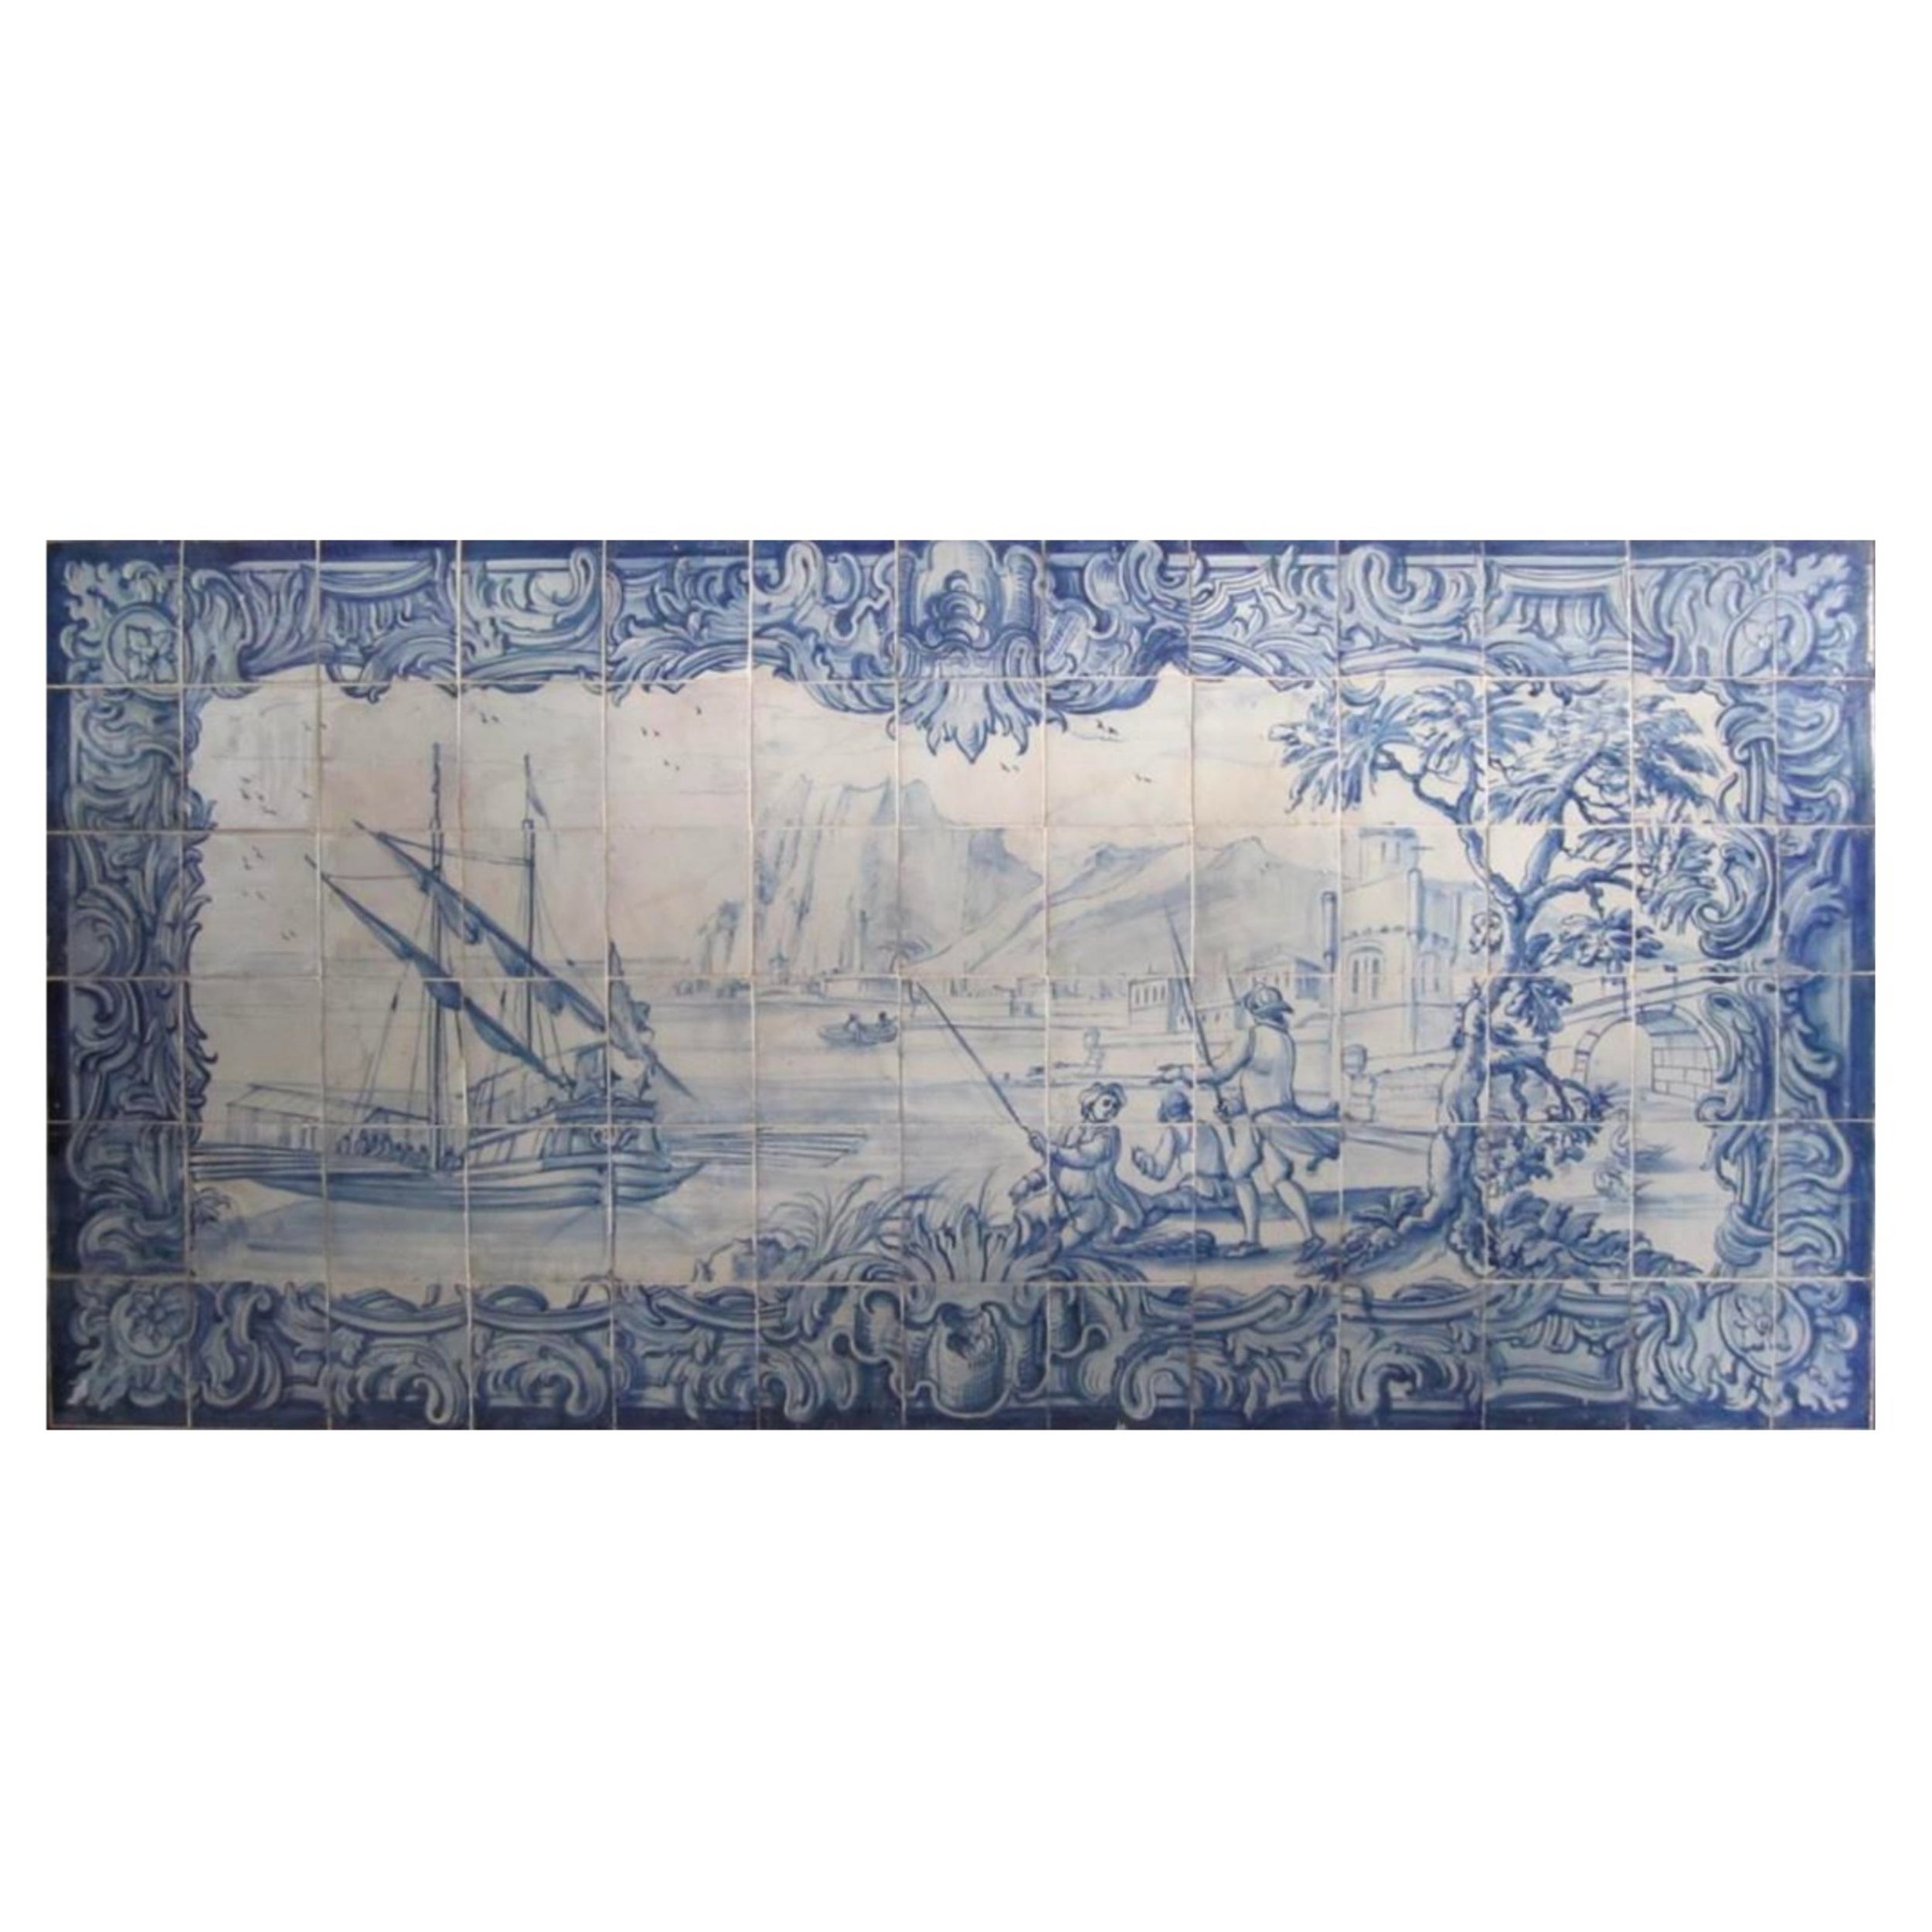 18th Century Portuguese "Azulejos" Panel "River Scene"